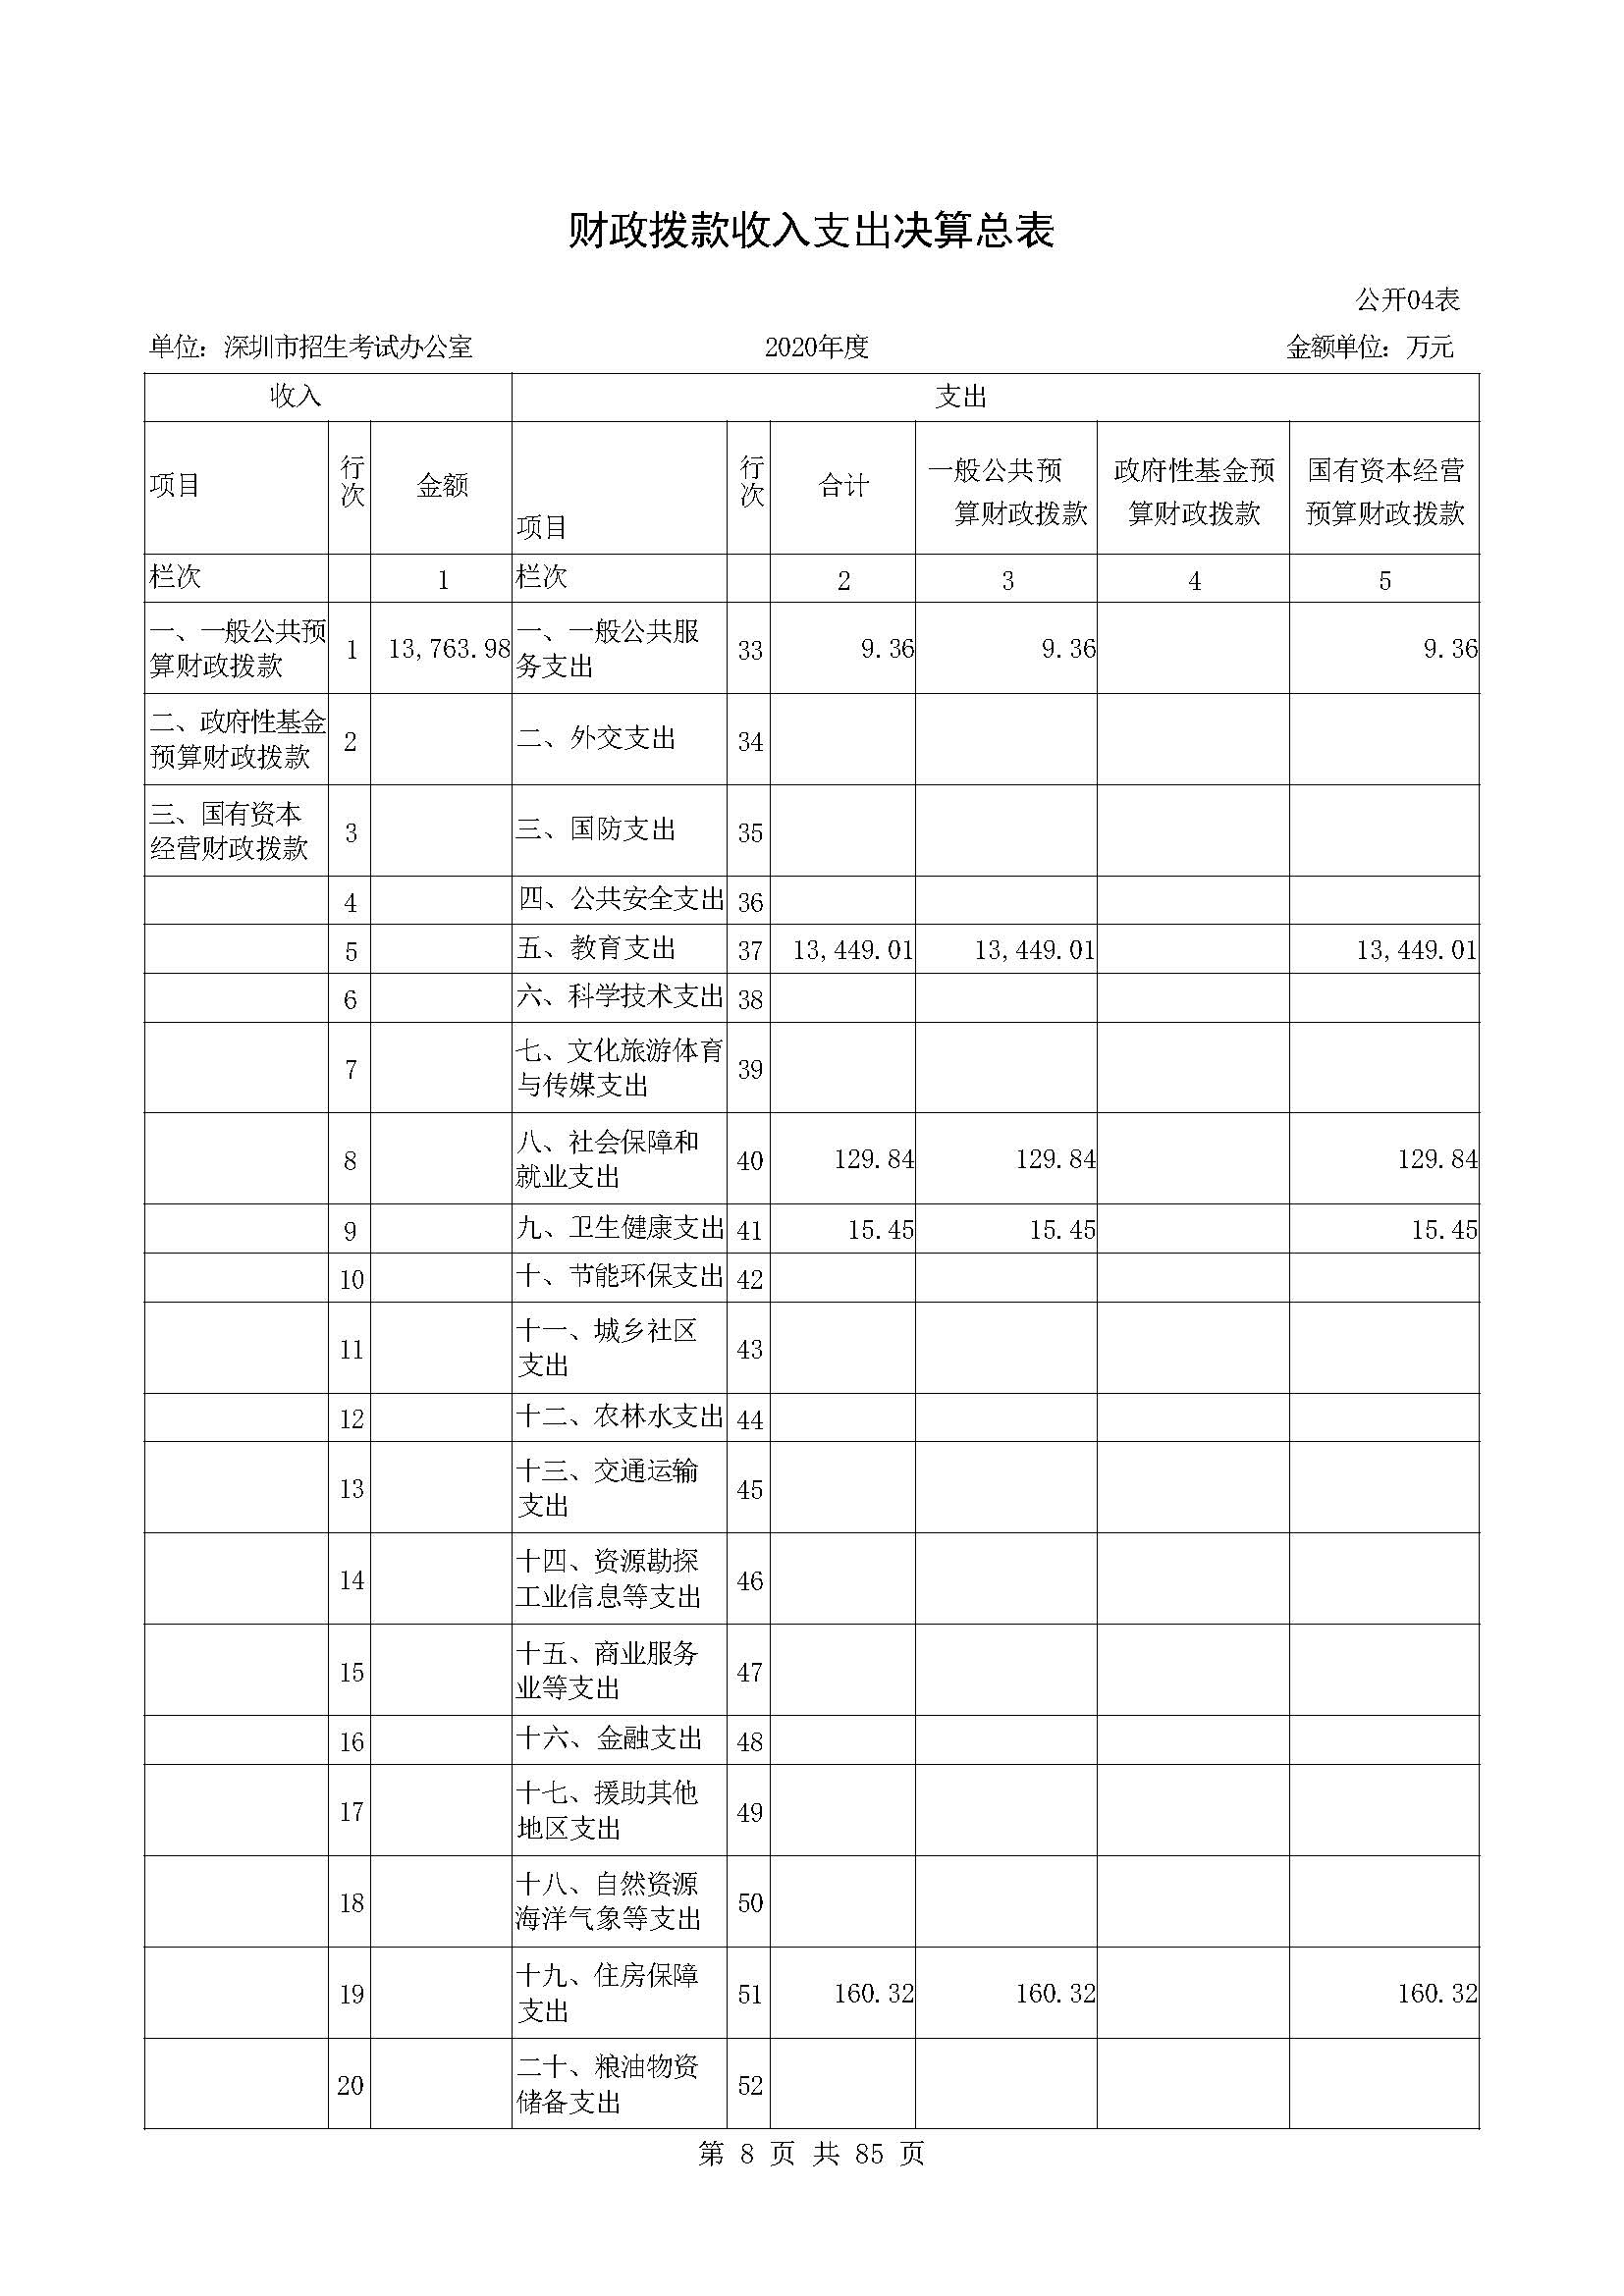 深圳市招生考试办公室2020年度部门决算_页面_09.jpg